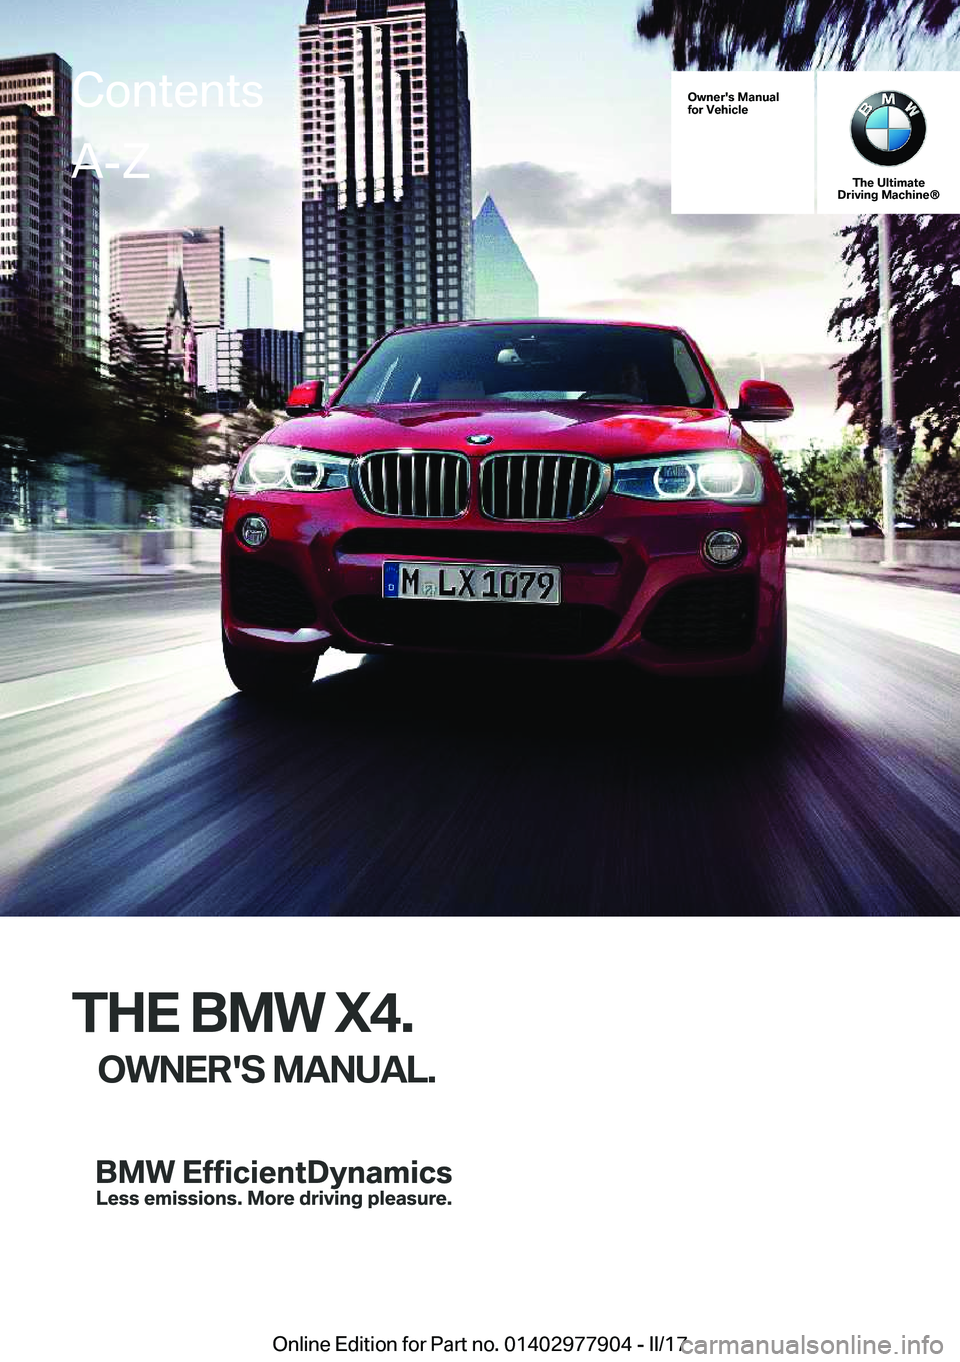 BMW X4 2018  Owners Manual �O�w�n�e�r�'�s��M�a�n�u�a�l
�f�o�r��V�e�h�i�c�l�e
�T�h�e��U�l�t�i�m�a�t�e
�D�r�i�v�i�n�g��M�a�c�h�i�n�e�n
�T�H�E��B�M�W��X�4�.
�O�W�N�E�R�'�S��M�A�N�U�A�L�.
�C�o�n�t�e�n�t�s�A�-�Z
�O�n�